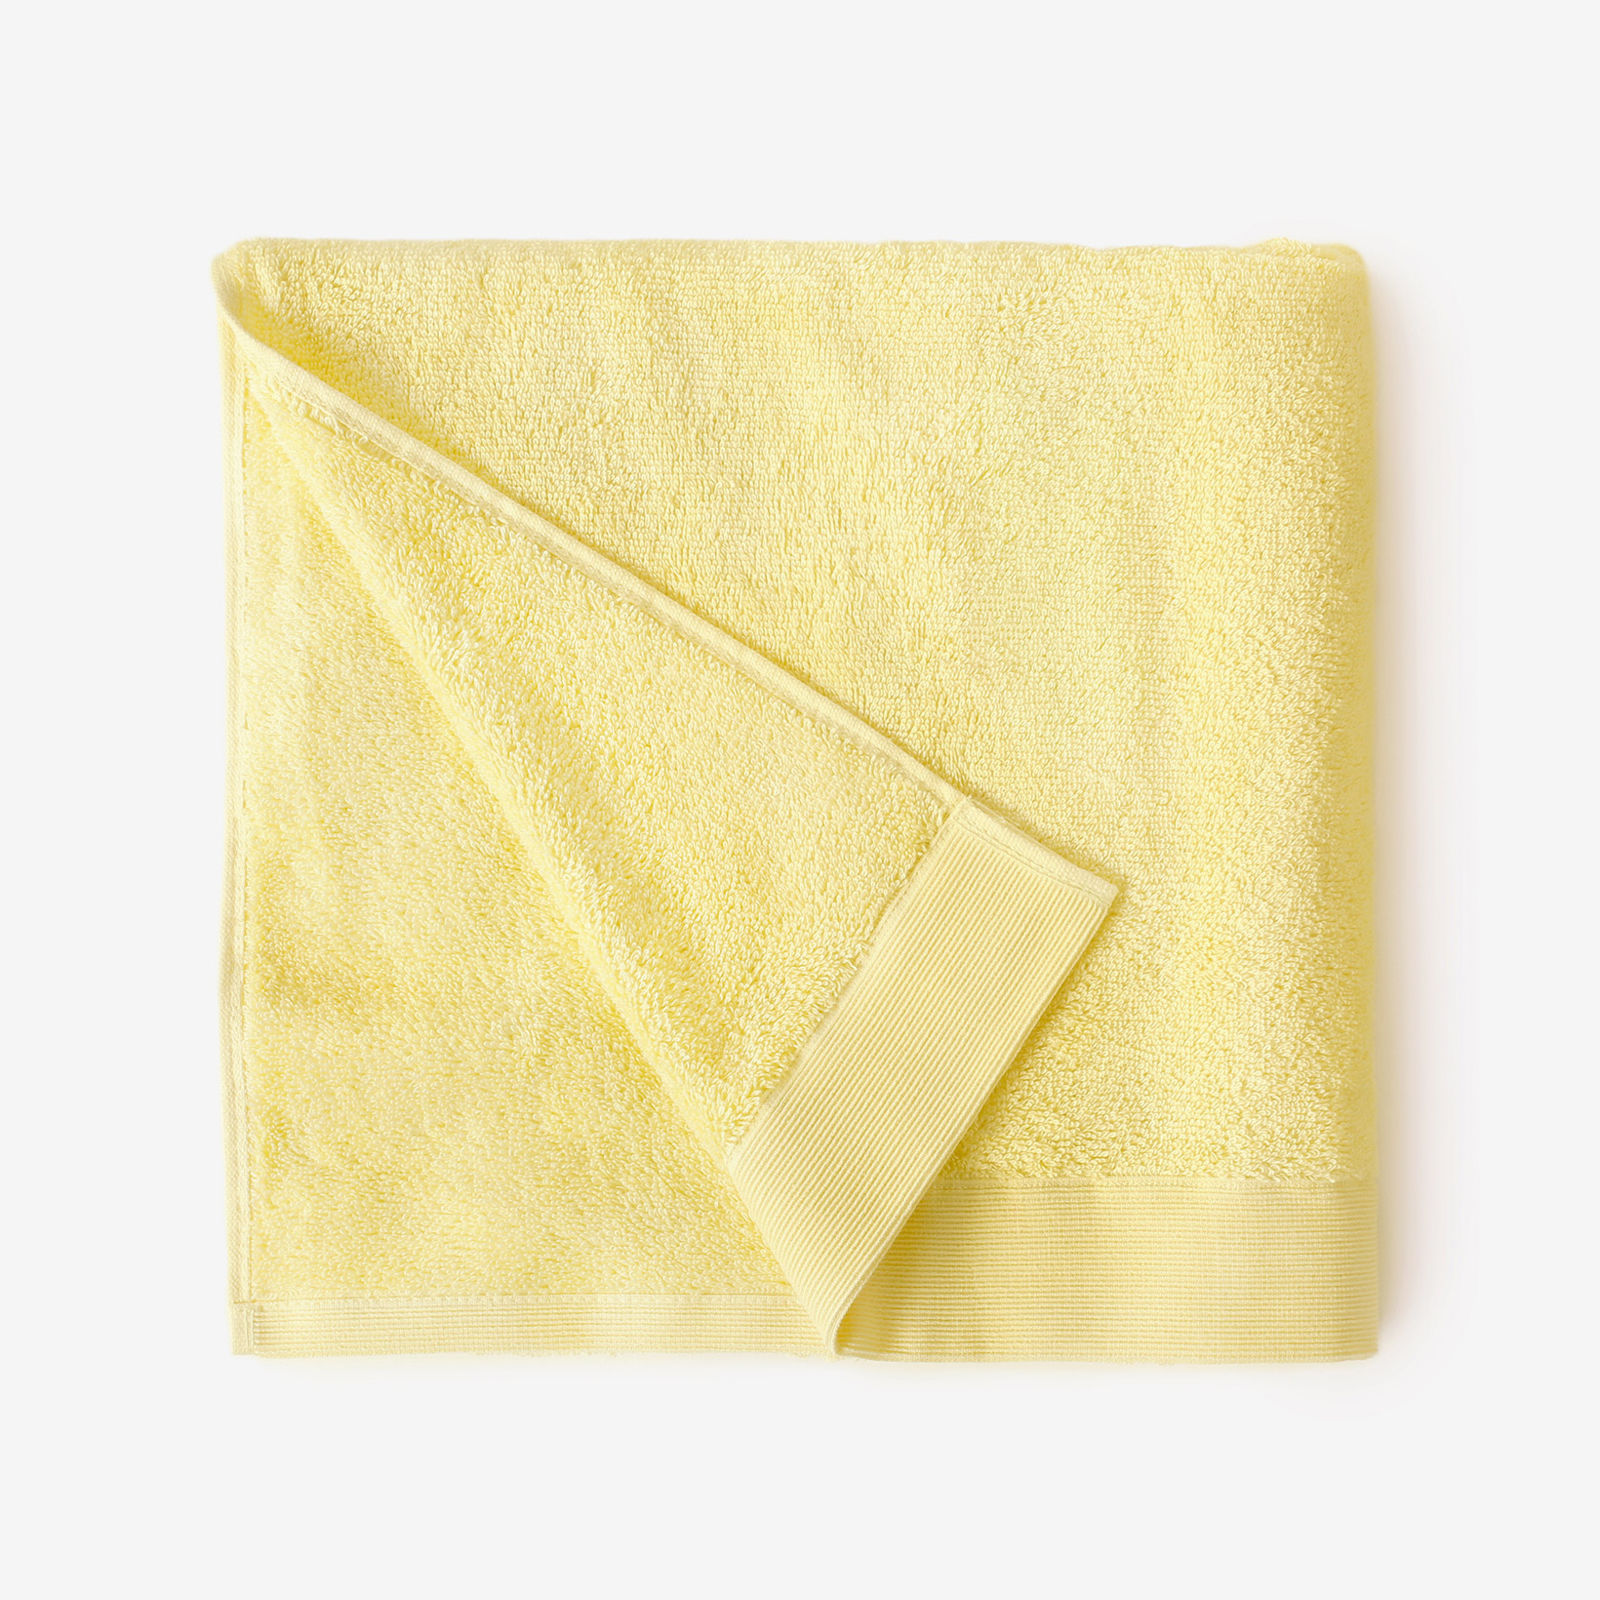 Modalový uterák/osuška s prírodným vláknom - svetlo žltý